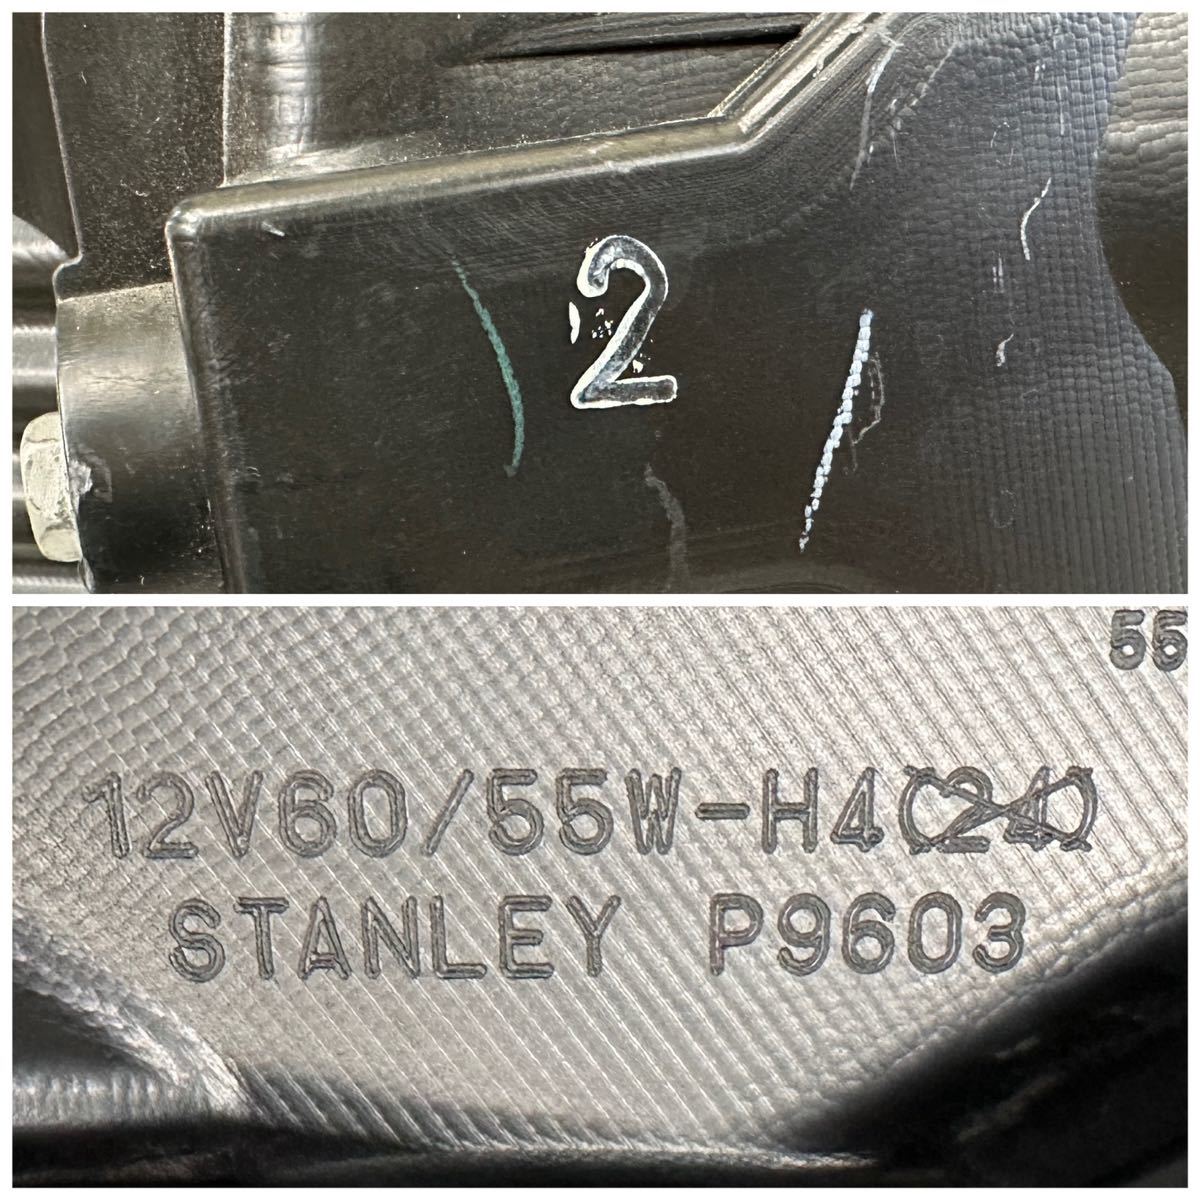 50704 フィット GE6 後期 純正 左 ヘッドライト ハロゲン STANLEY P9603 刻印 2_画像10